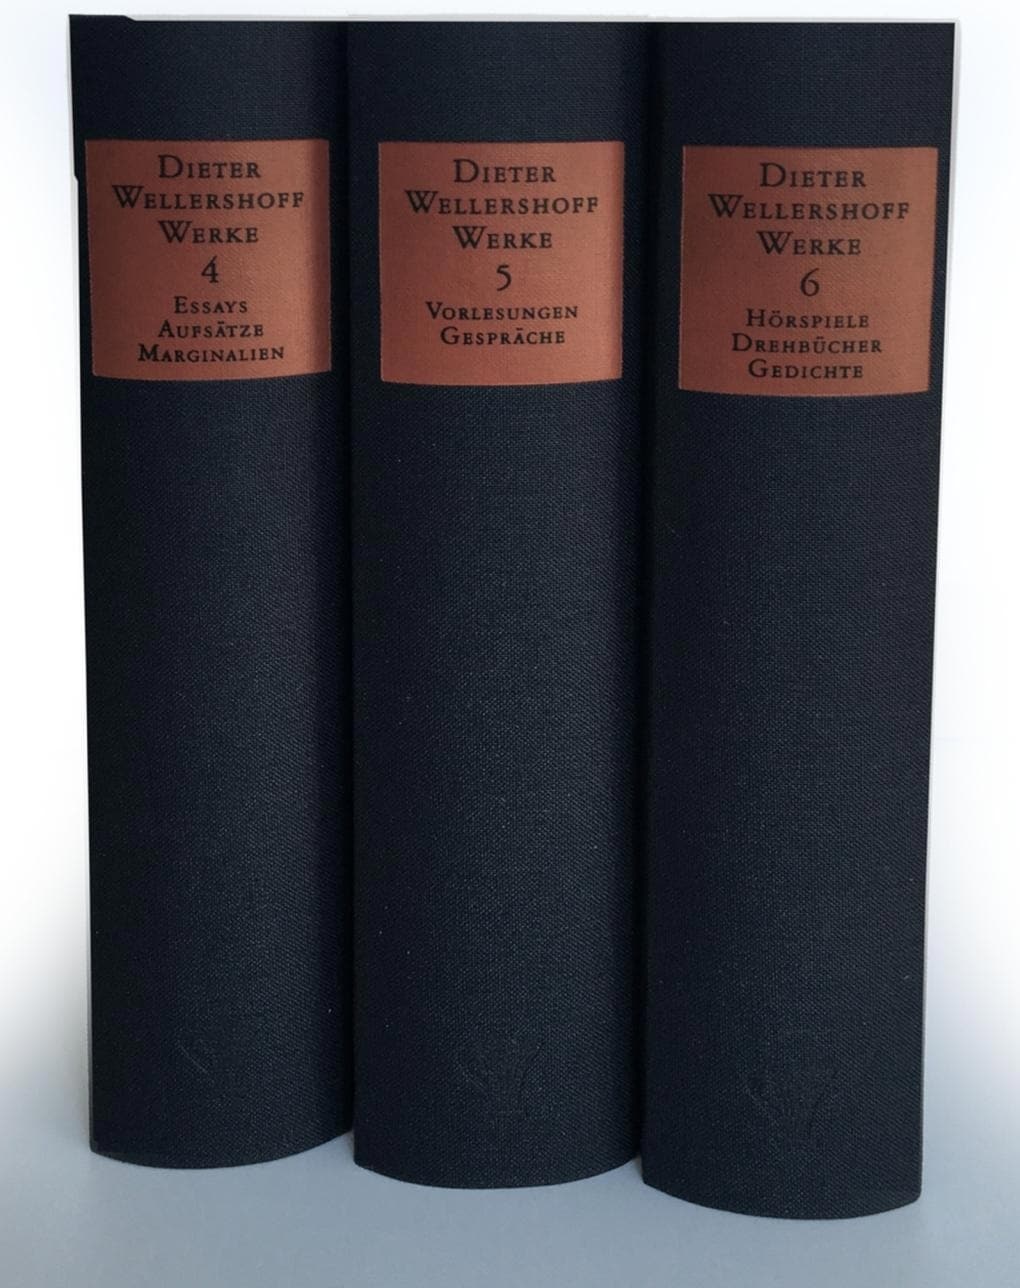 Bd. 4: Essays, Aufsätze, Marginalien. Bd. 5: Vorlesungen und Gespräche. Bd. 6: Hörspiele, Drehbücher, Belletristik von Dieter Wellershoff